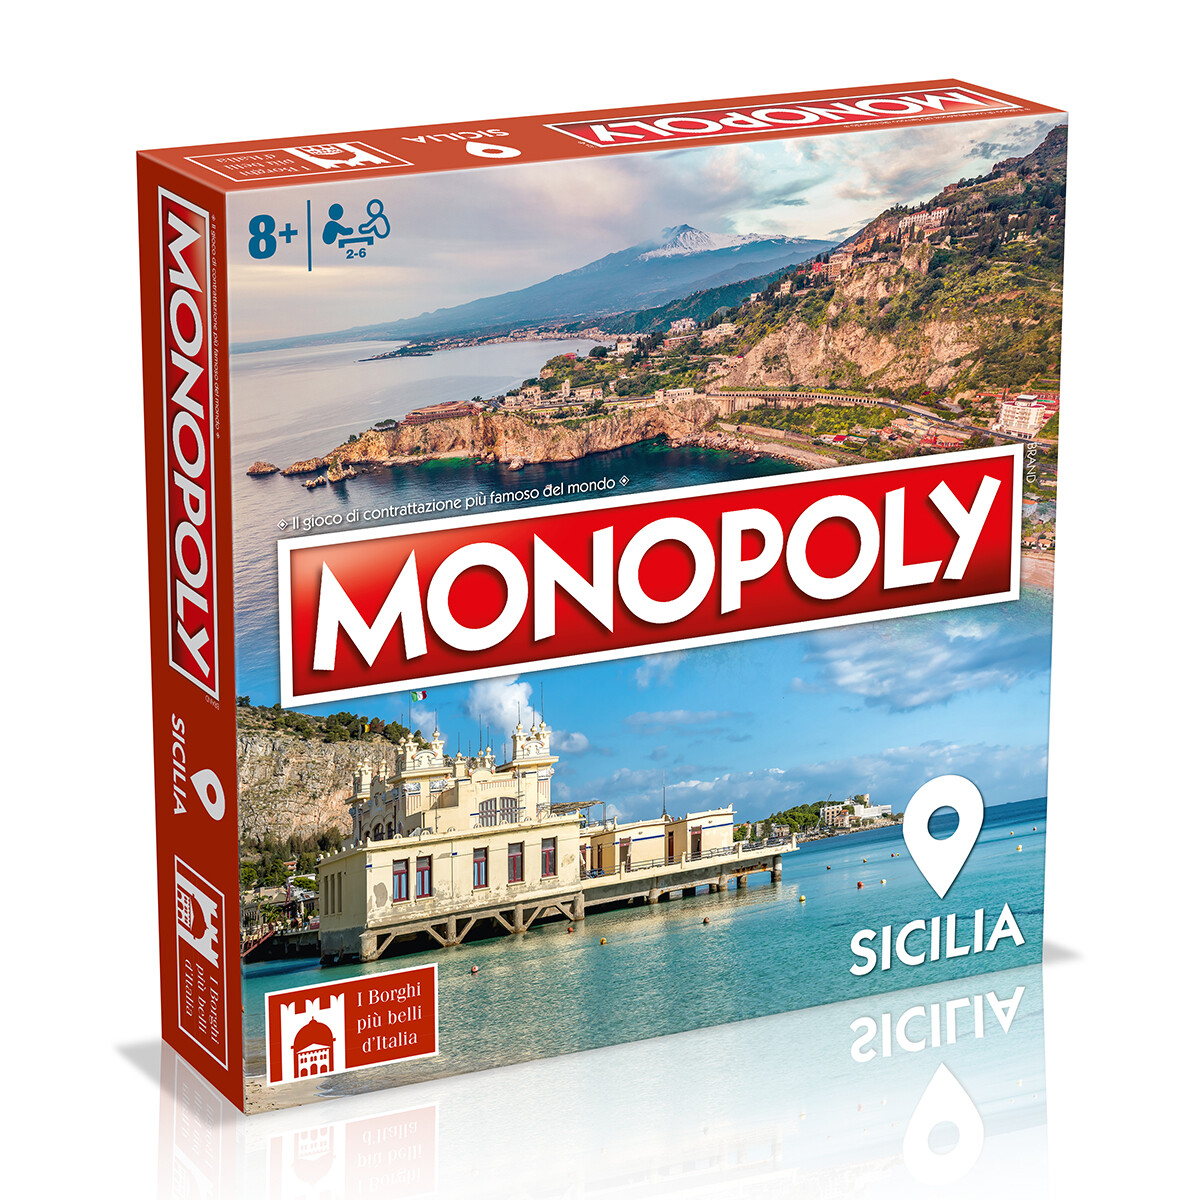 Monopoly - eidizione i borghi più belli d'itallia - sicilia - MONOPOLY